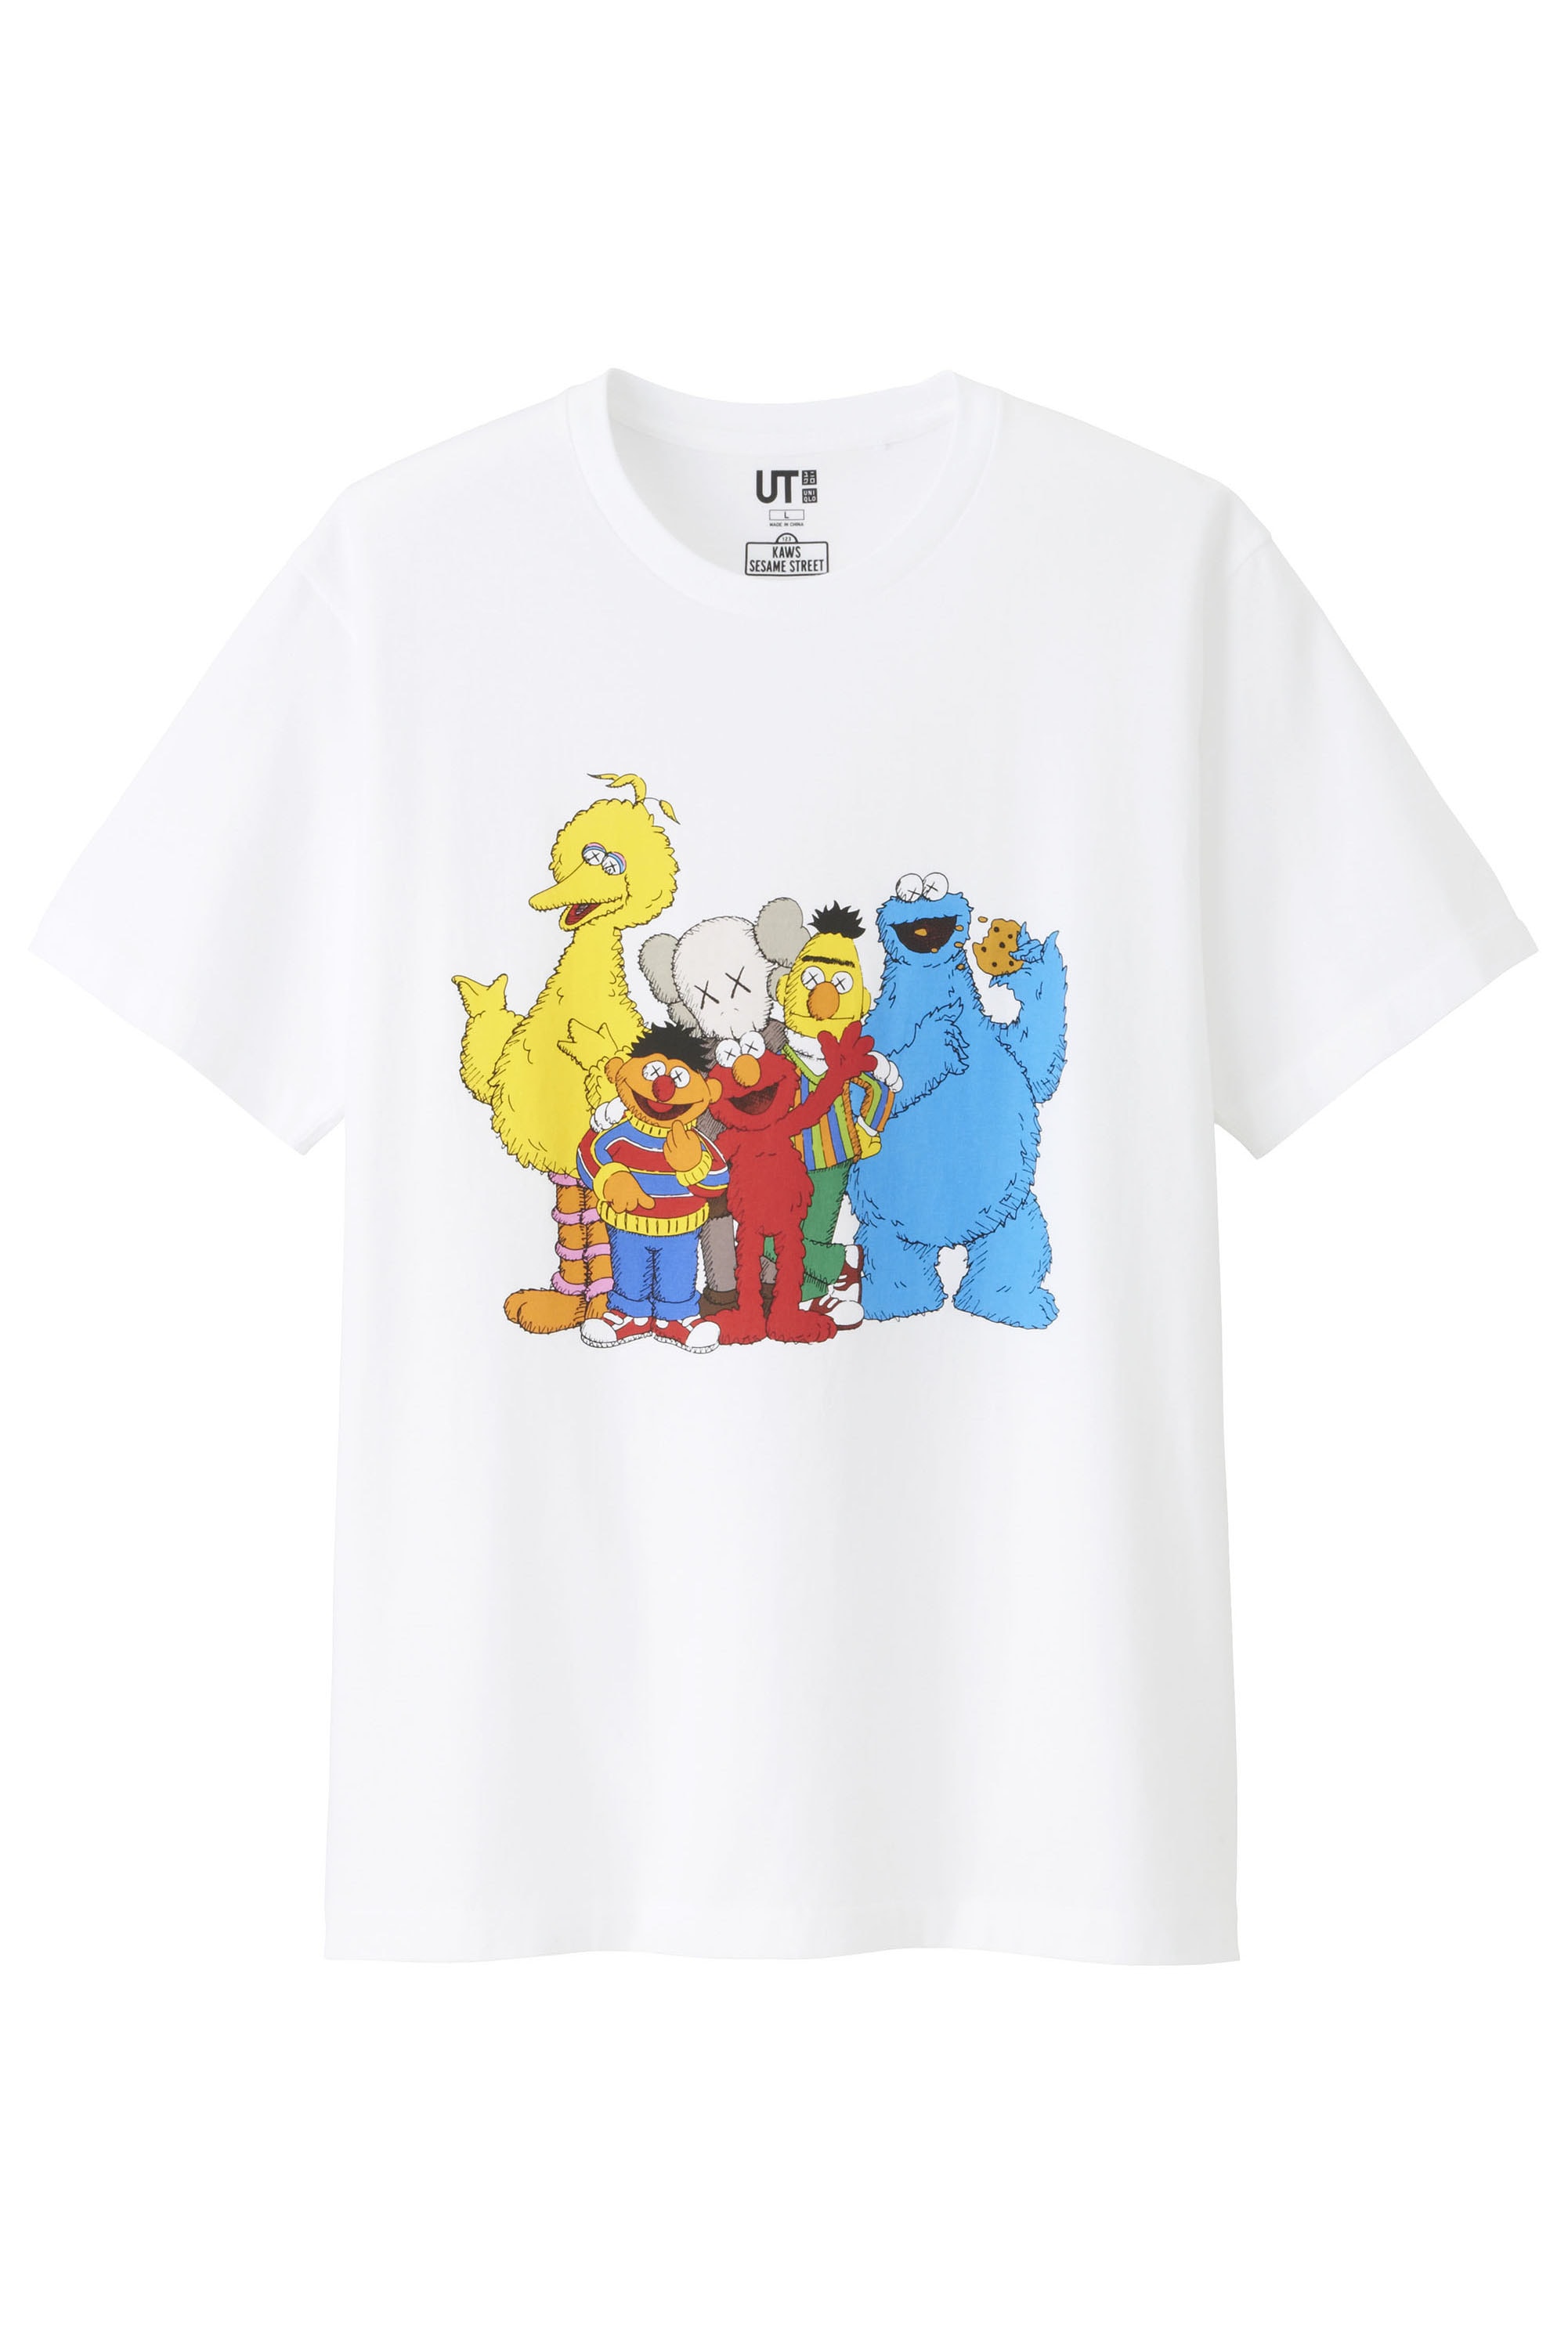 KAWS Uniqlo Sesame Street Collection Images Date de sortie